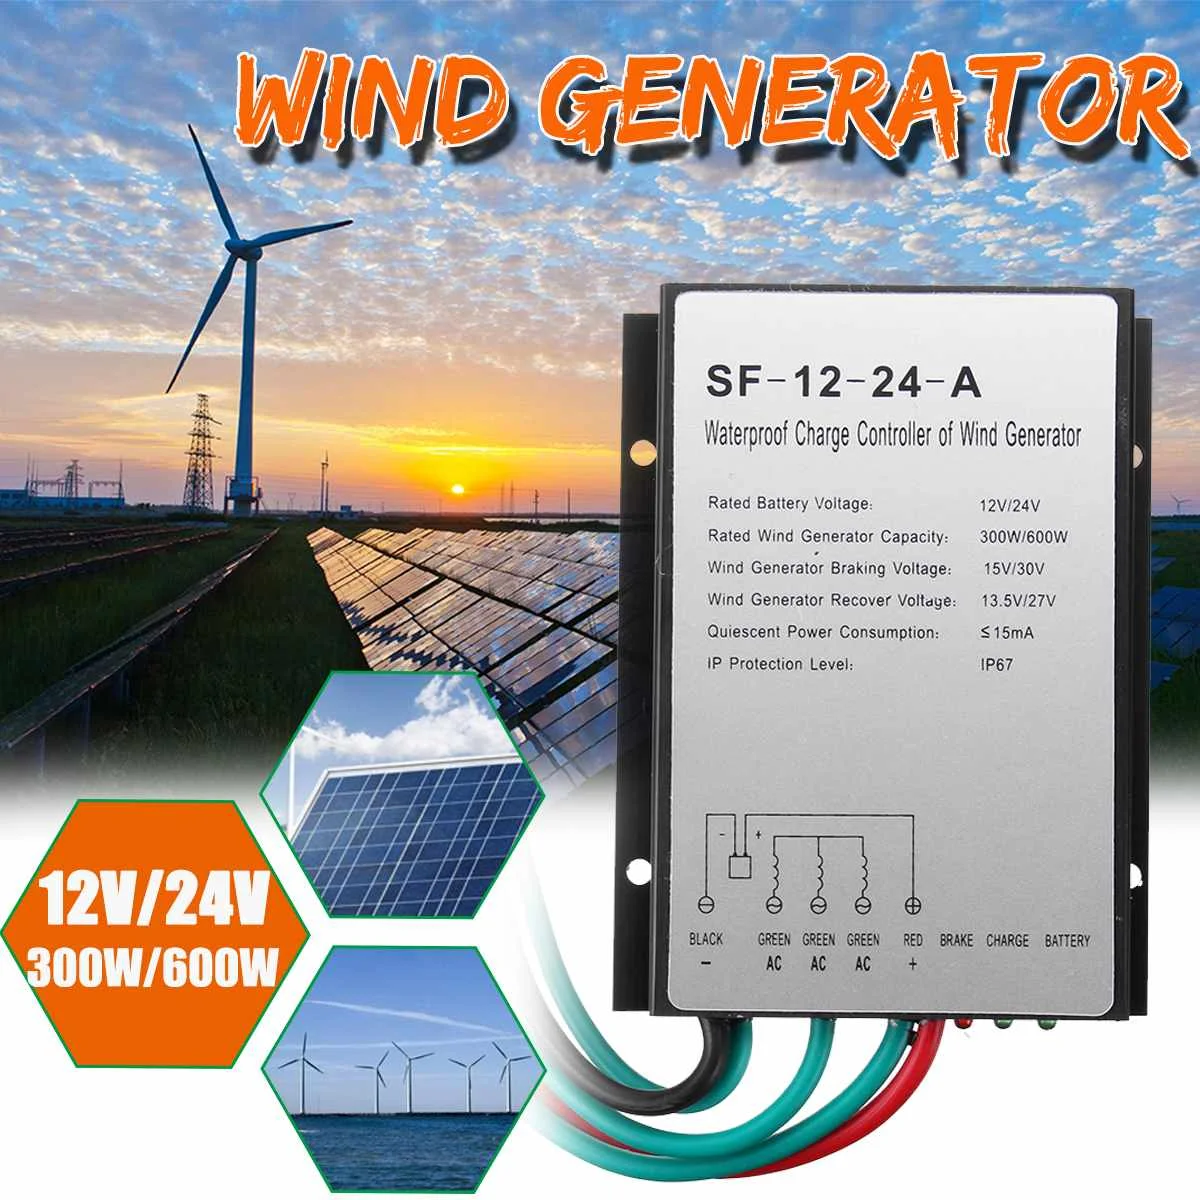 

Ветряной генератор 300 Вт/600 Вт 12/24 В постоянного тока, ветряной генератор IP67, ветряная турбина, контроллер заряда, ветряная мельница, тормозной регулятор